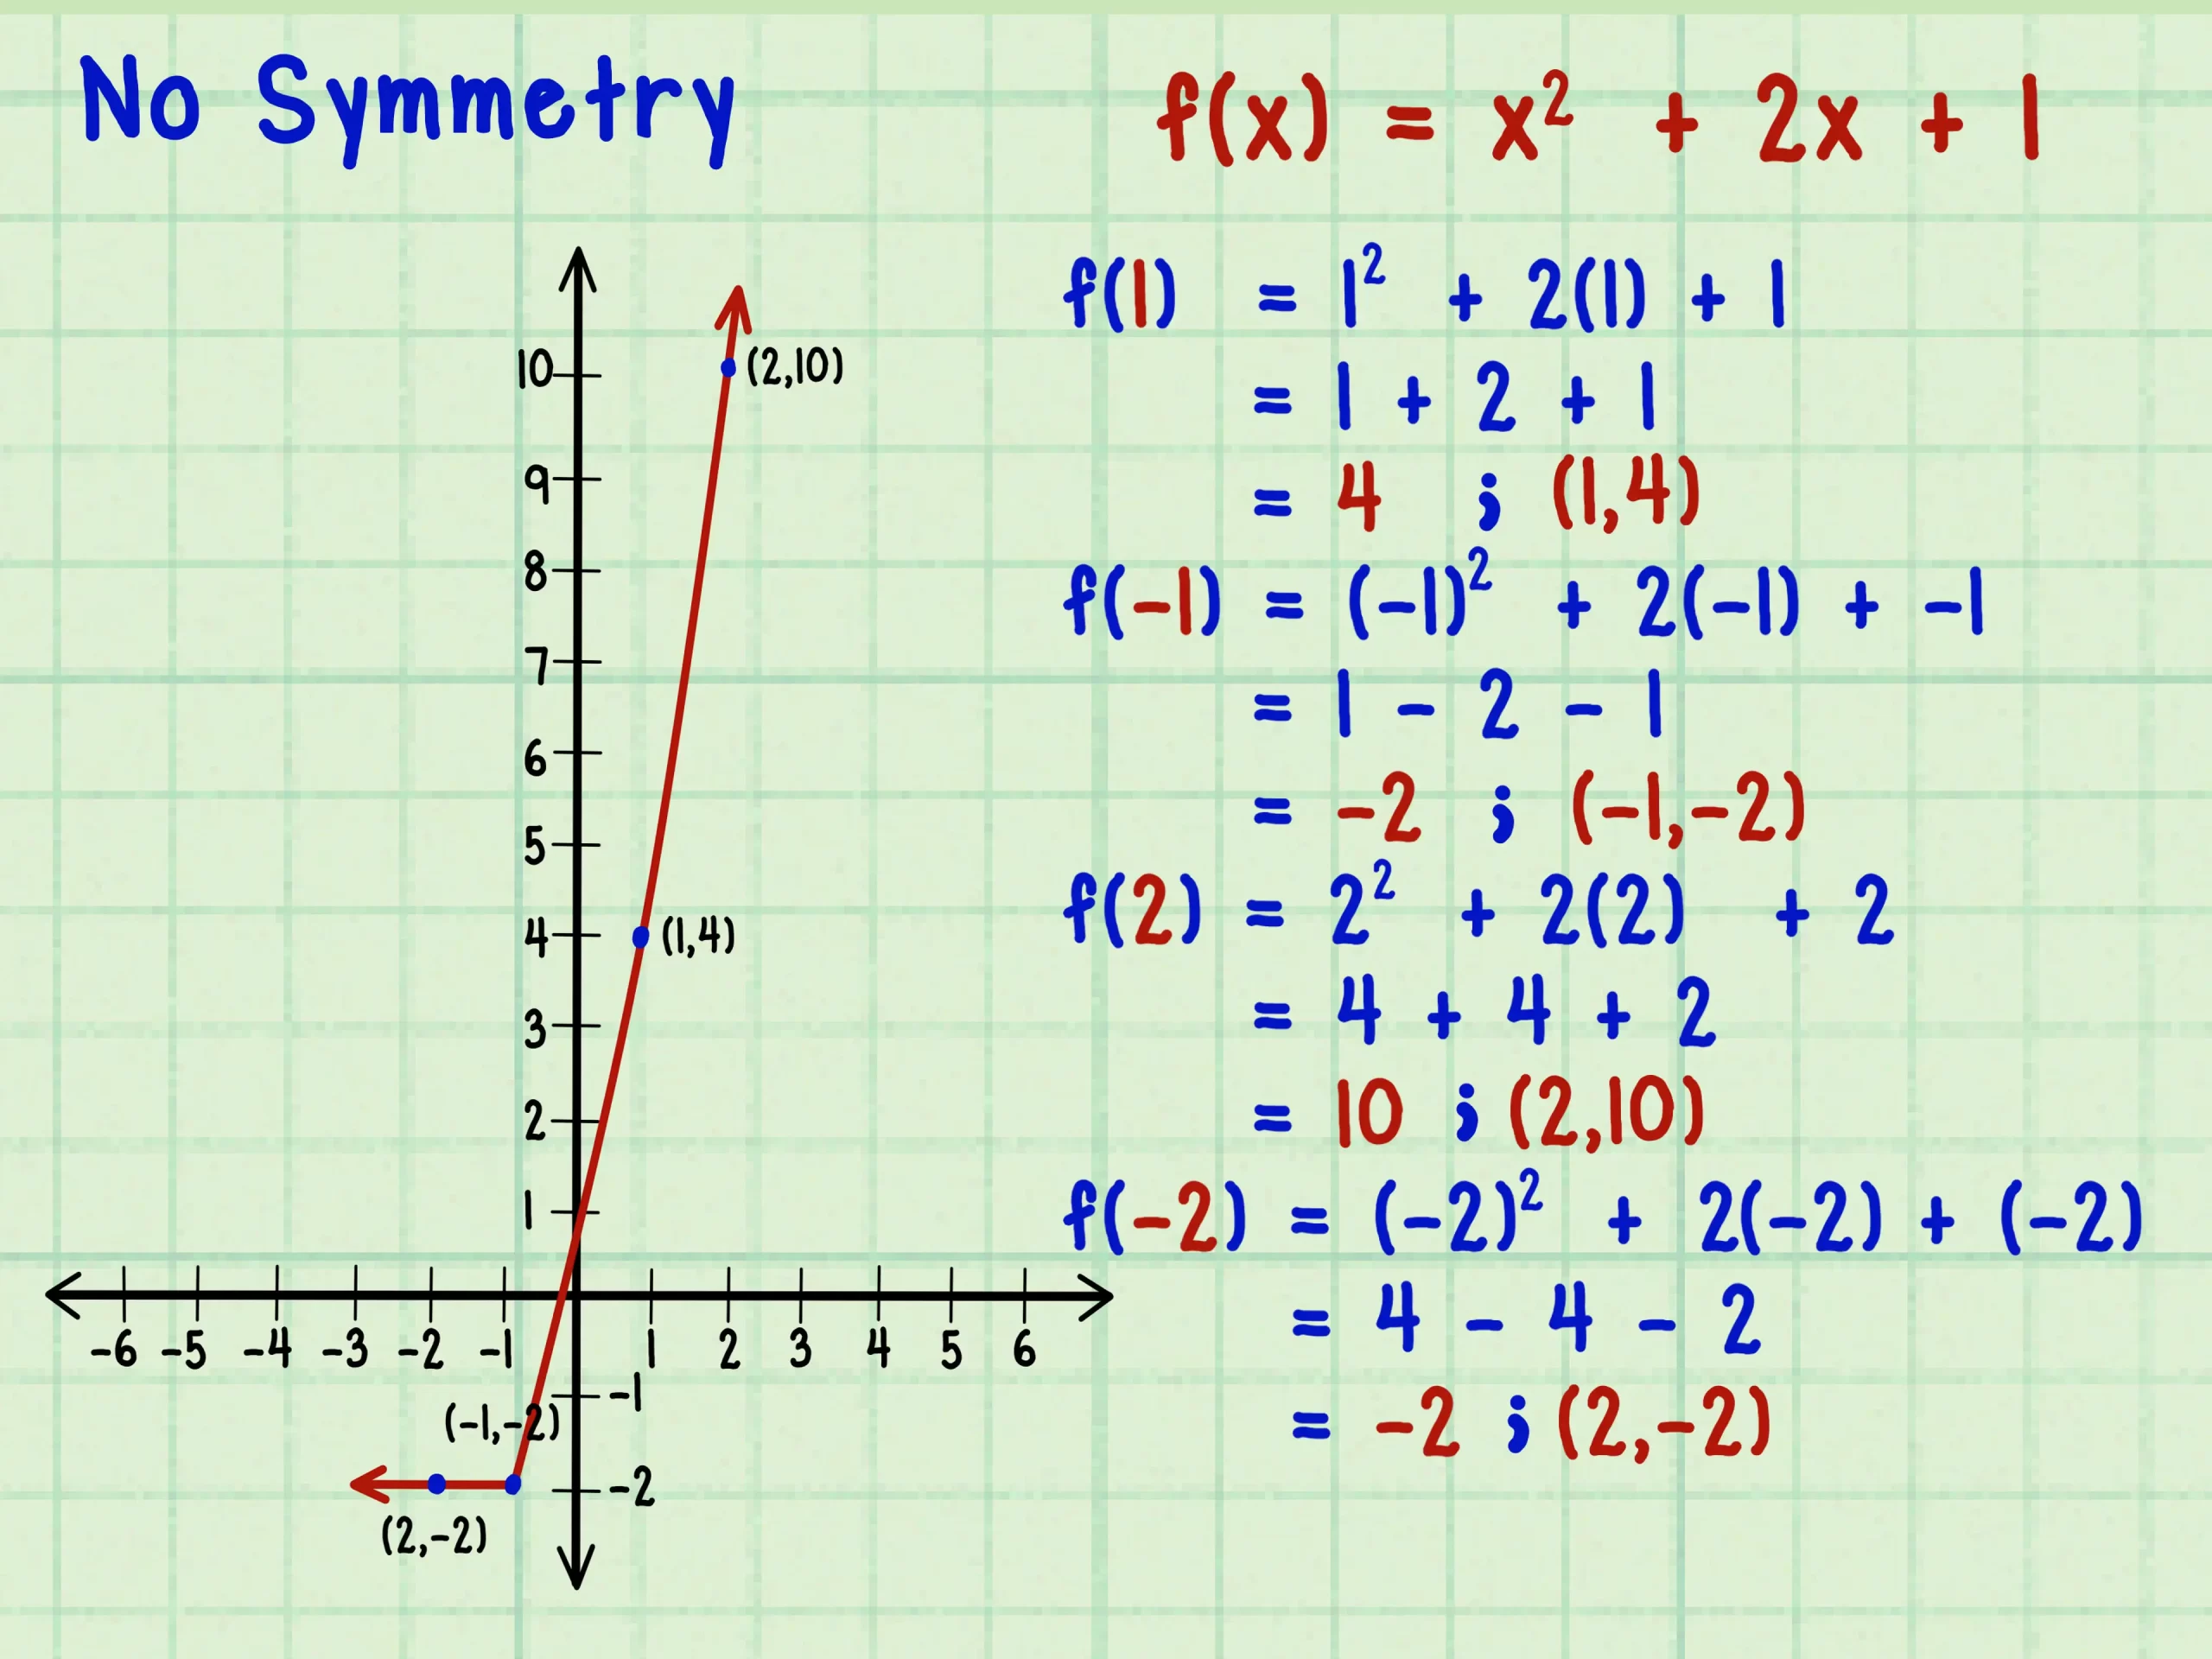 Verificare la simmetria del grafico rispetto all'asse delle ordinate